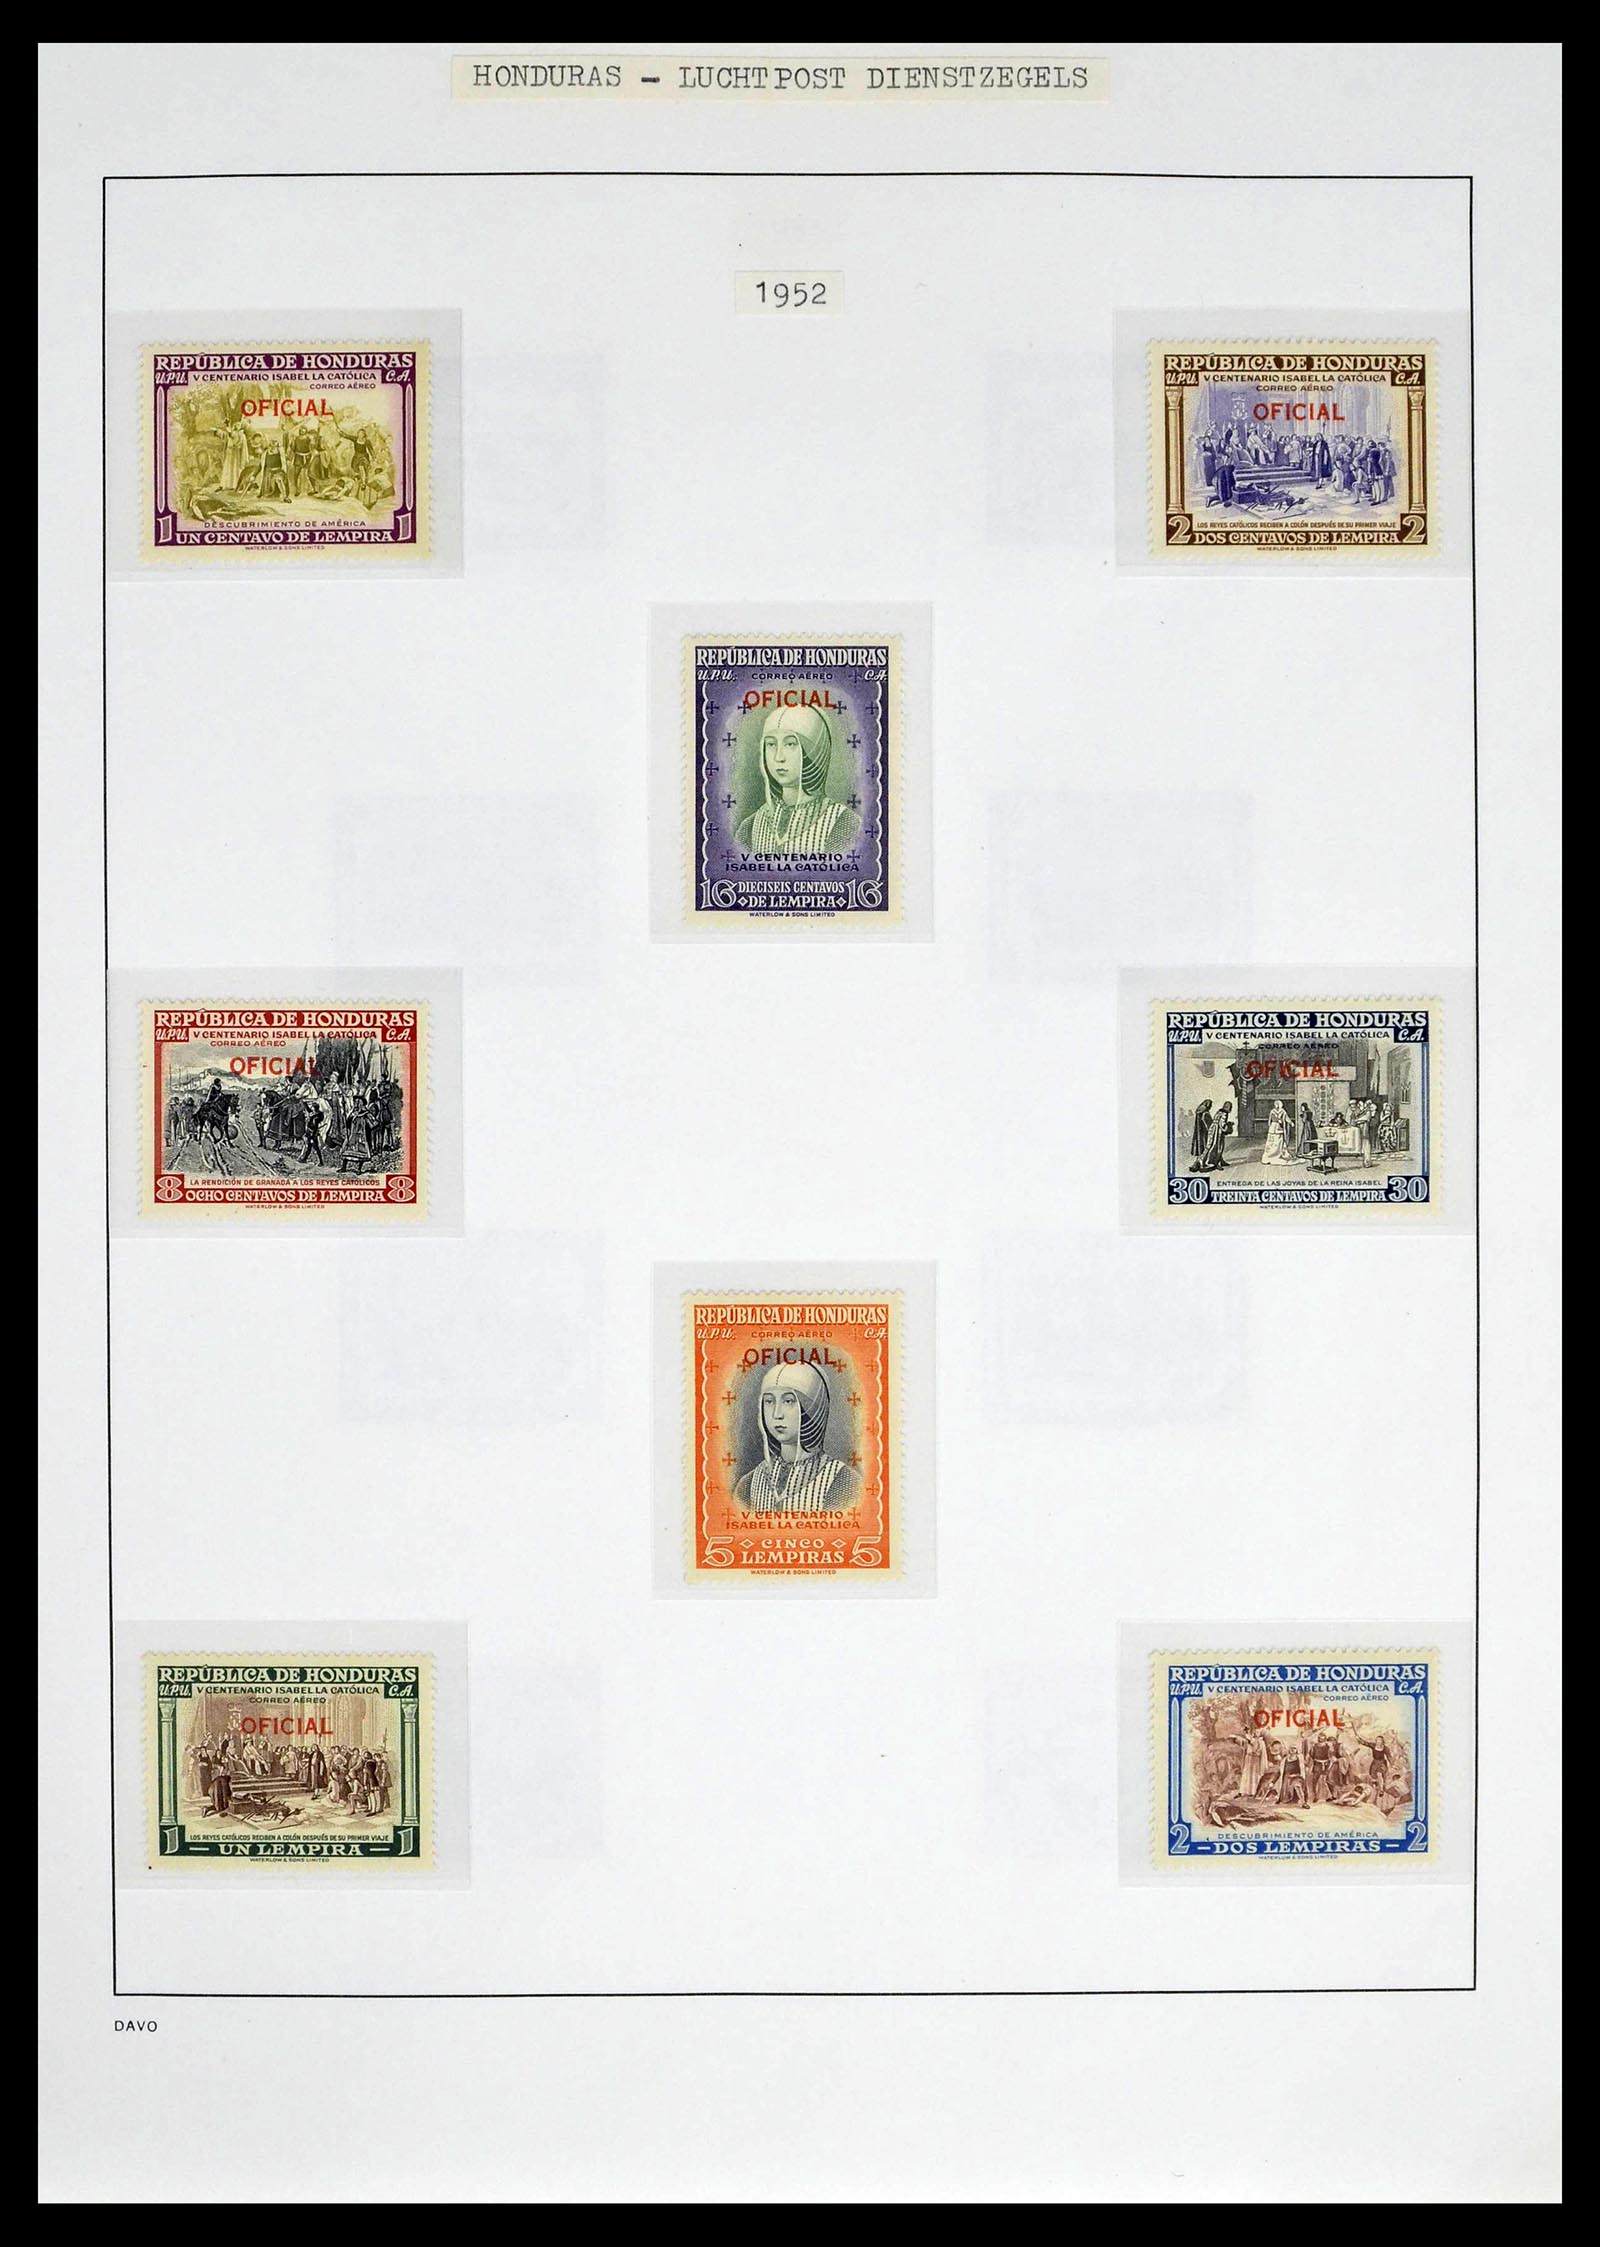 39404 0027 - Postzegelverzameling 39404 Honduras dienstzegels 1890-1974.